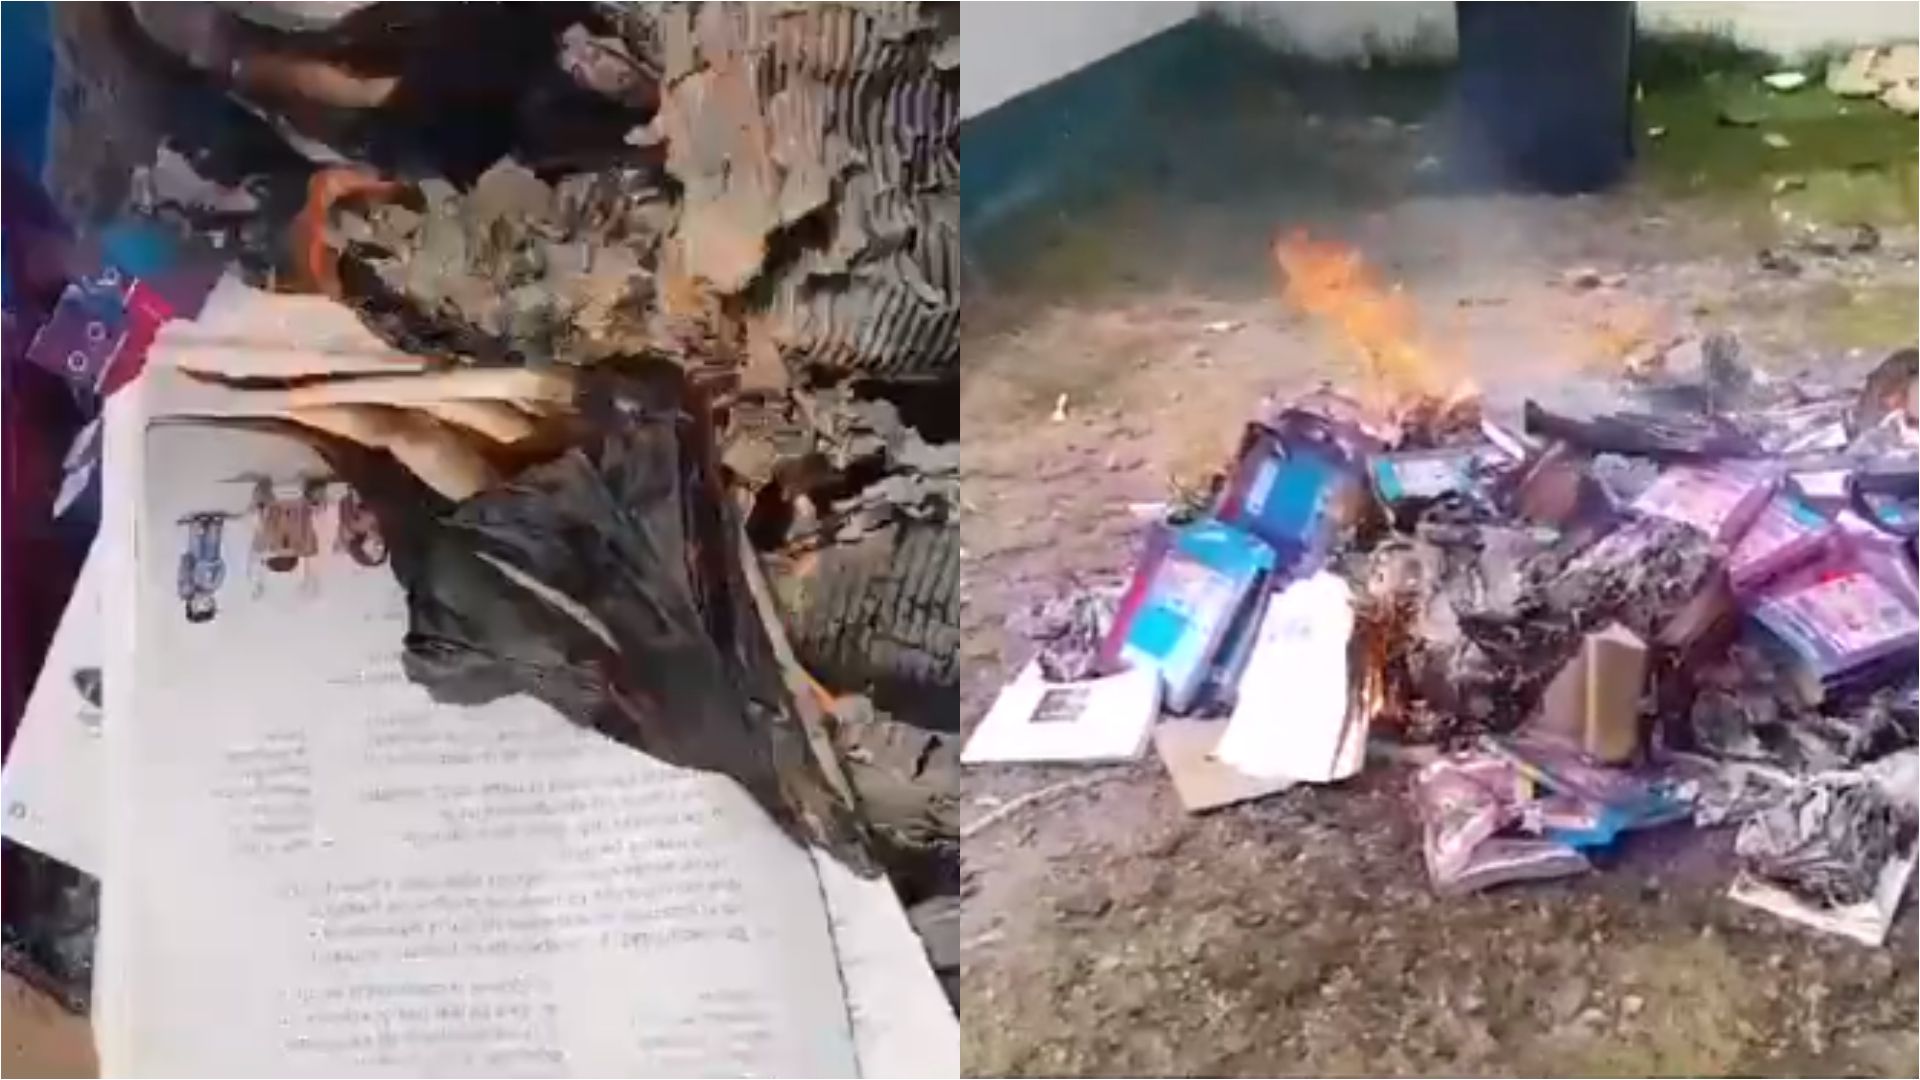 AMLO reacciona a la quema de libros de texto en Chiapas: “Están manipulados”